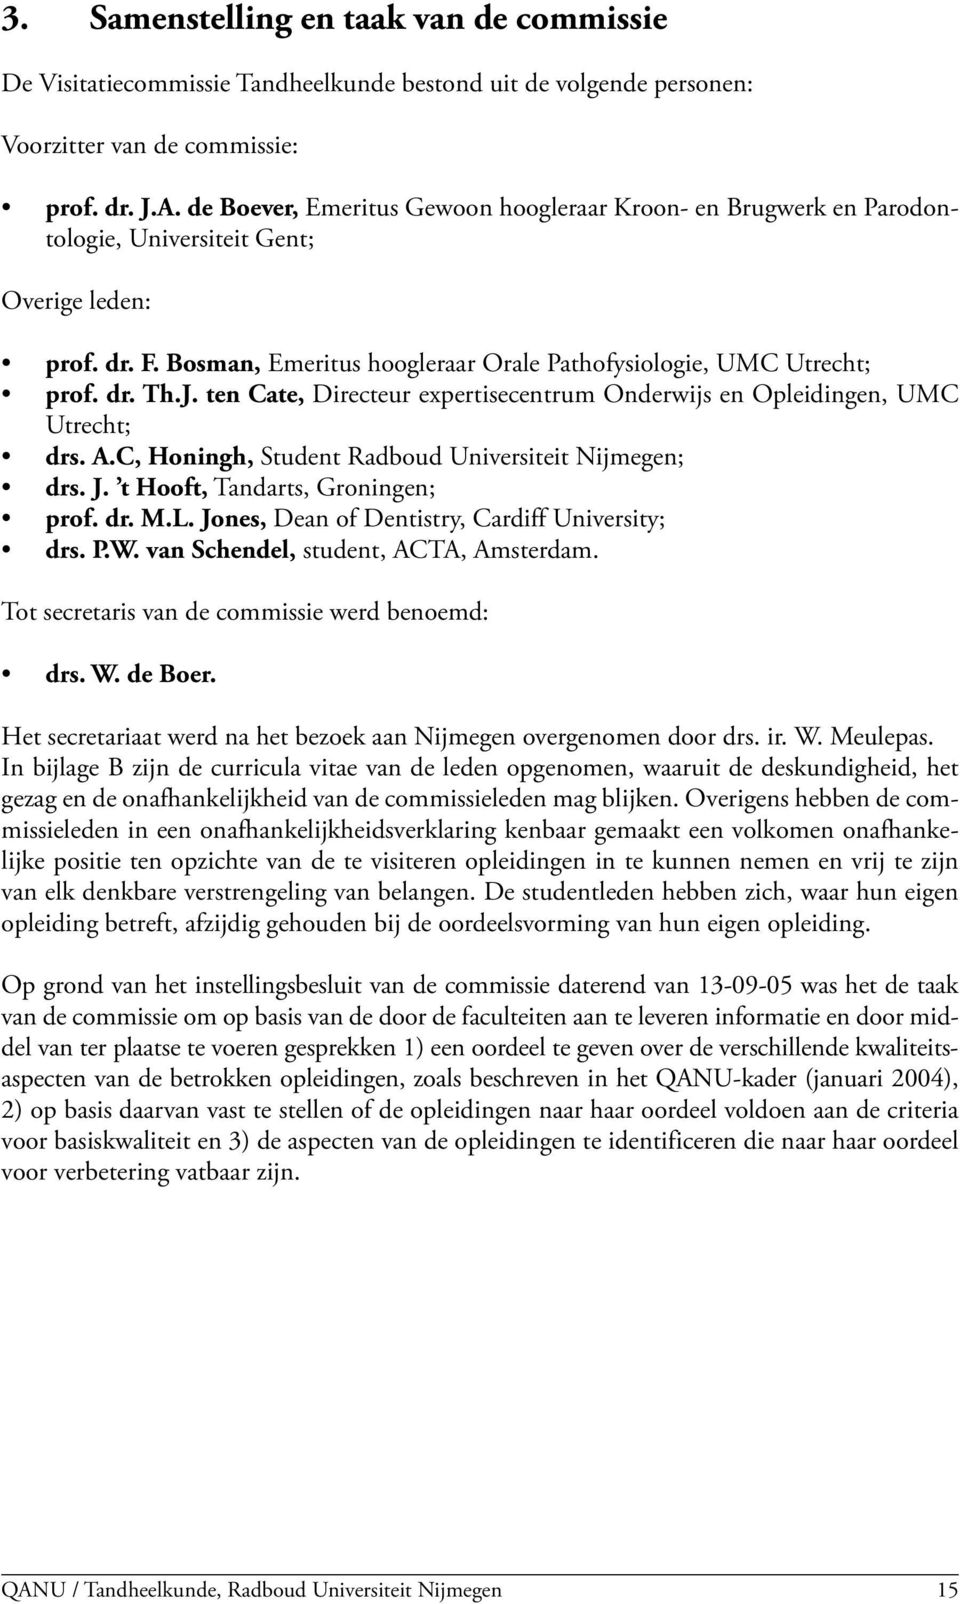 J. ten Cate, Directeur expertisecentrum Onderwijs en Opleidingen, UMC Utrecht; drs. A.C, Honingh, Student Radboud Universiteit Nijmegen; drs. J. t Hooft, Tandarts, Groningen; prof. dr. M.L.